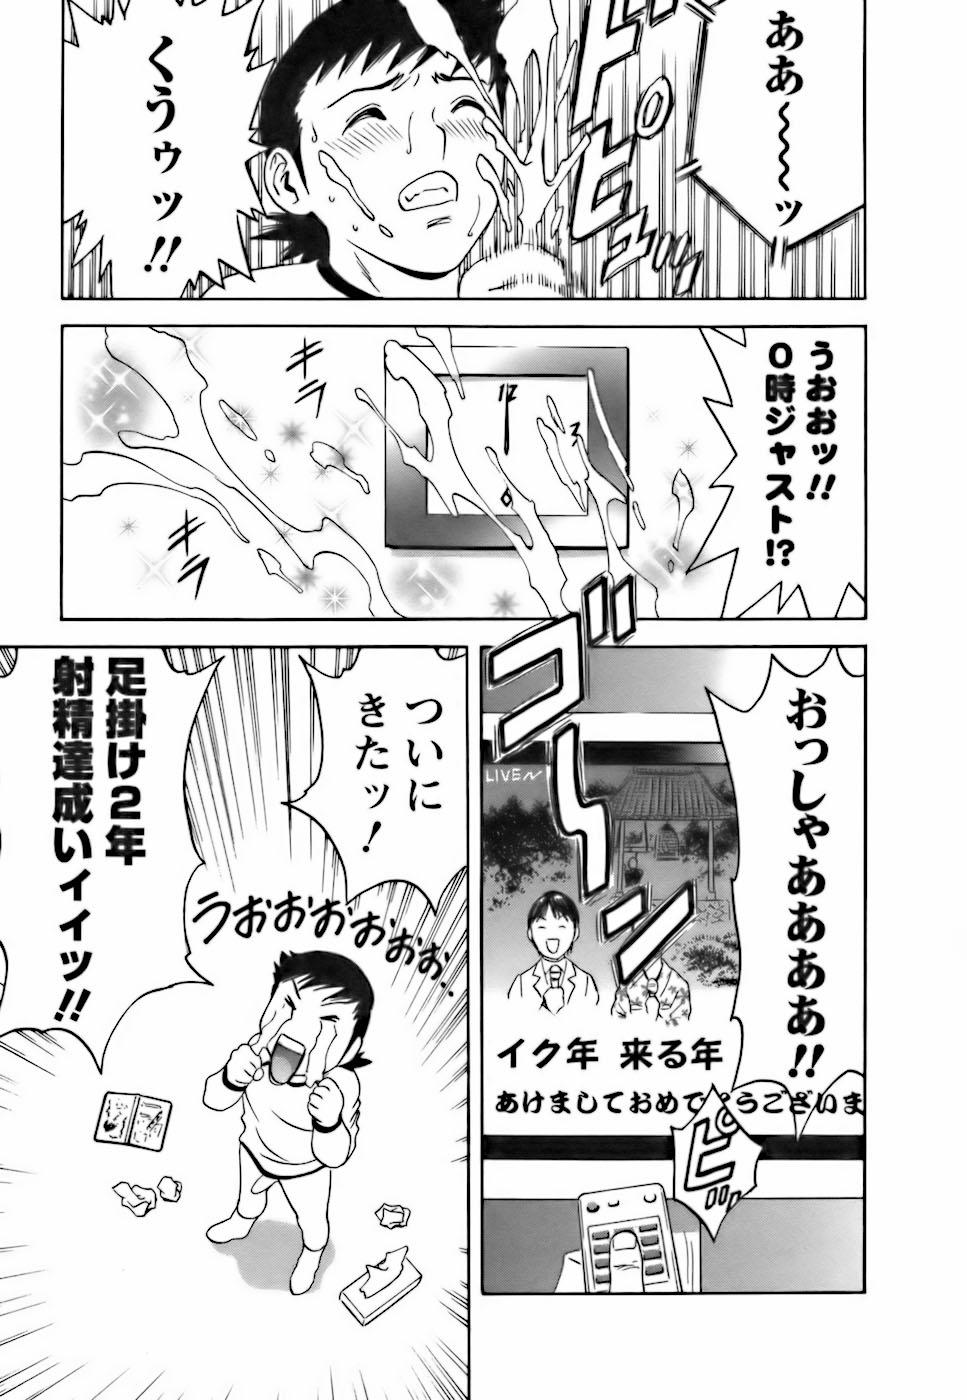 [Hidemaru] Mo-Retsu! Boin Sensei (Boing Boing Teacher) Vol.3 151